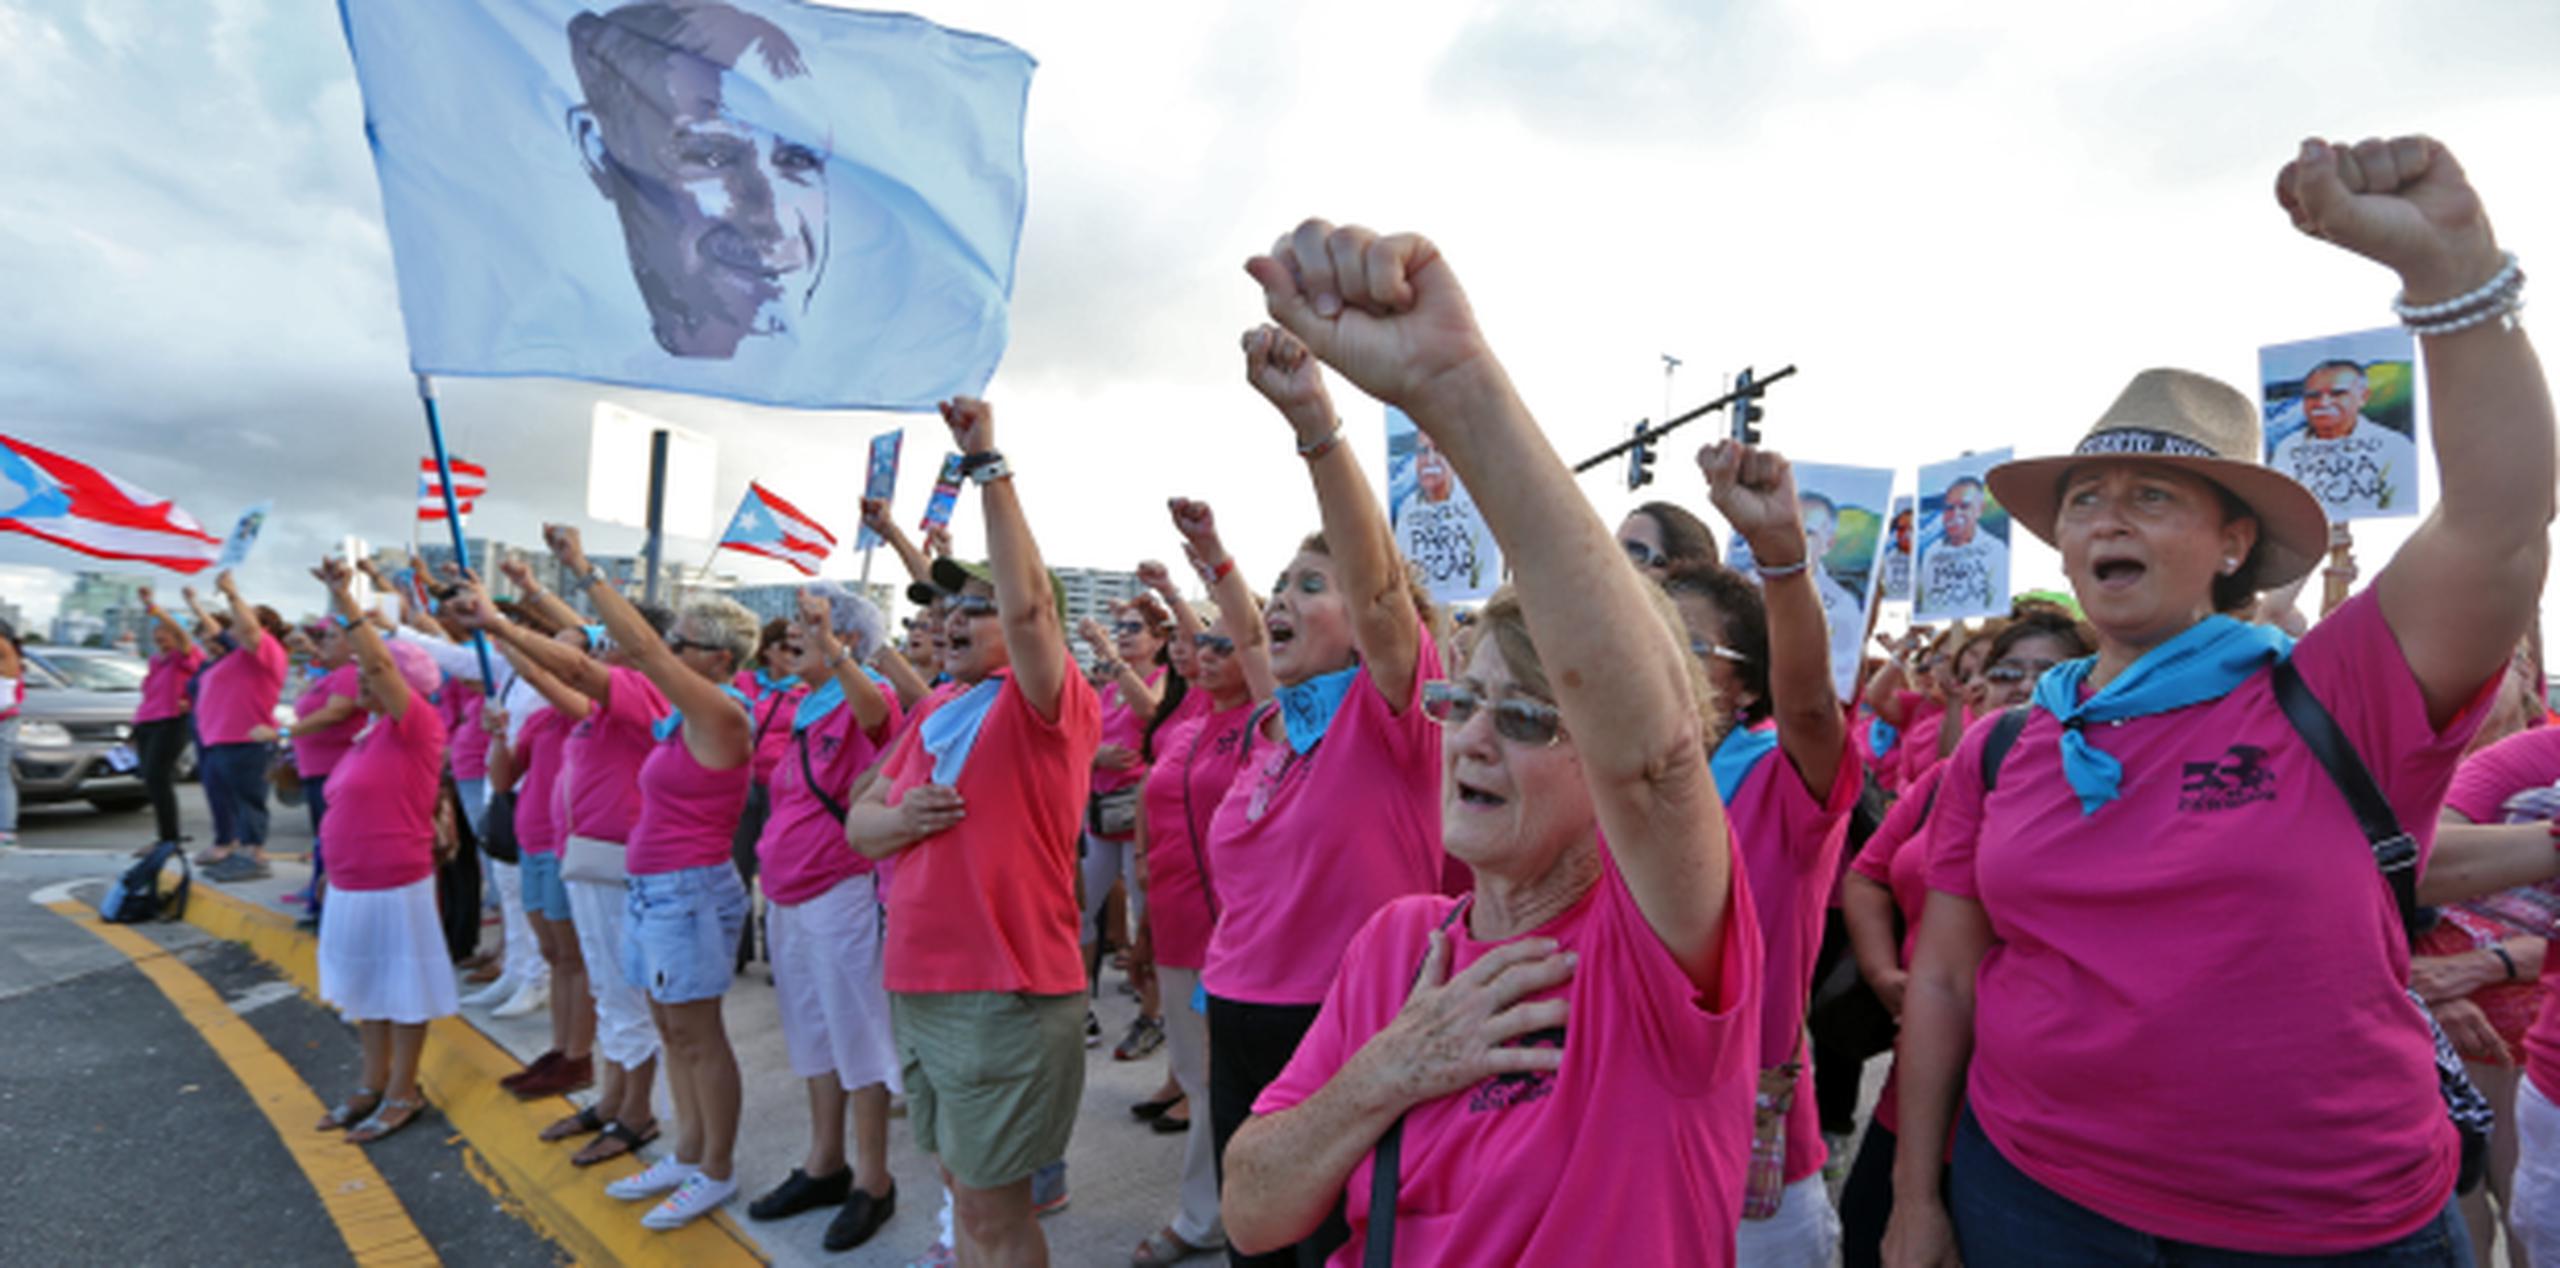 Como cada último domingo de mes, las féminas en el puente corearon estribillos alusivos a la lucha por la liberación de López Rivera y ondearon banderas de Puerto Rico, así como una gigantesca con su rostro impreso. (juan.martinez@gfrmedia.com)